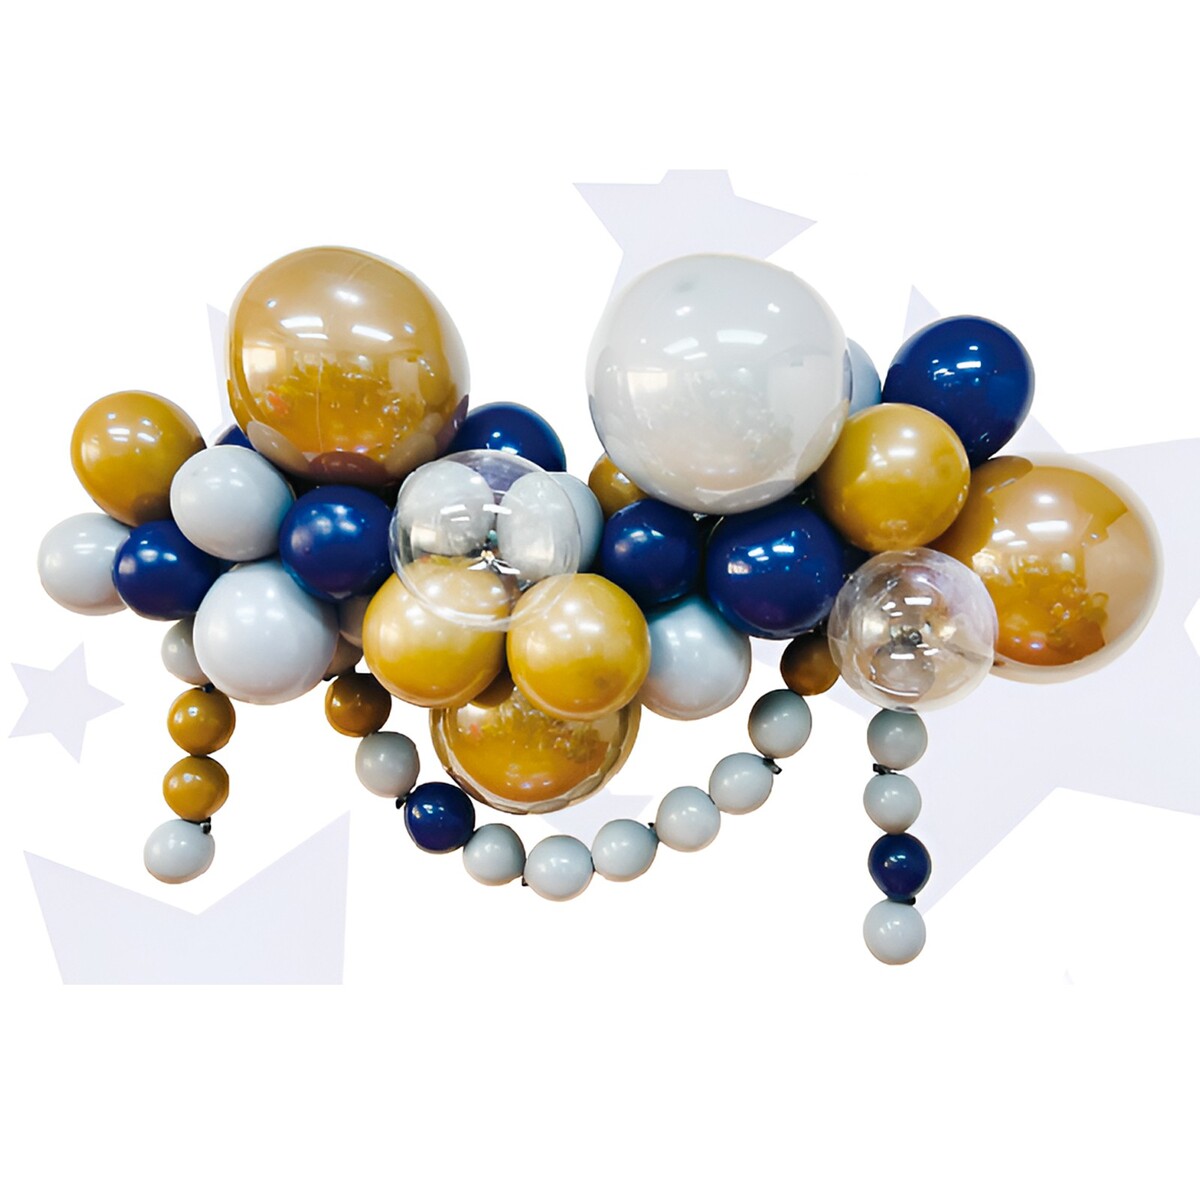 Набор для создания композиций из воздушных шаров, набор 52 шт., коричневый, серебро, синий 100622 набор для создания композиций из воздушных шаров набор 52 шт голубой песок бирюза